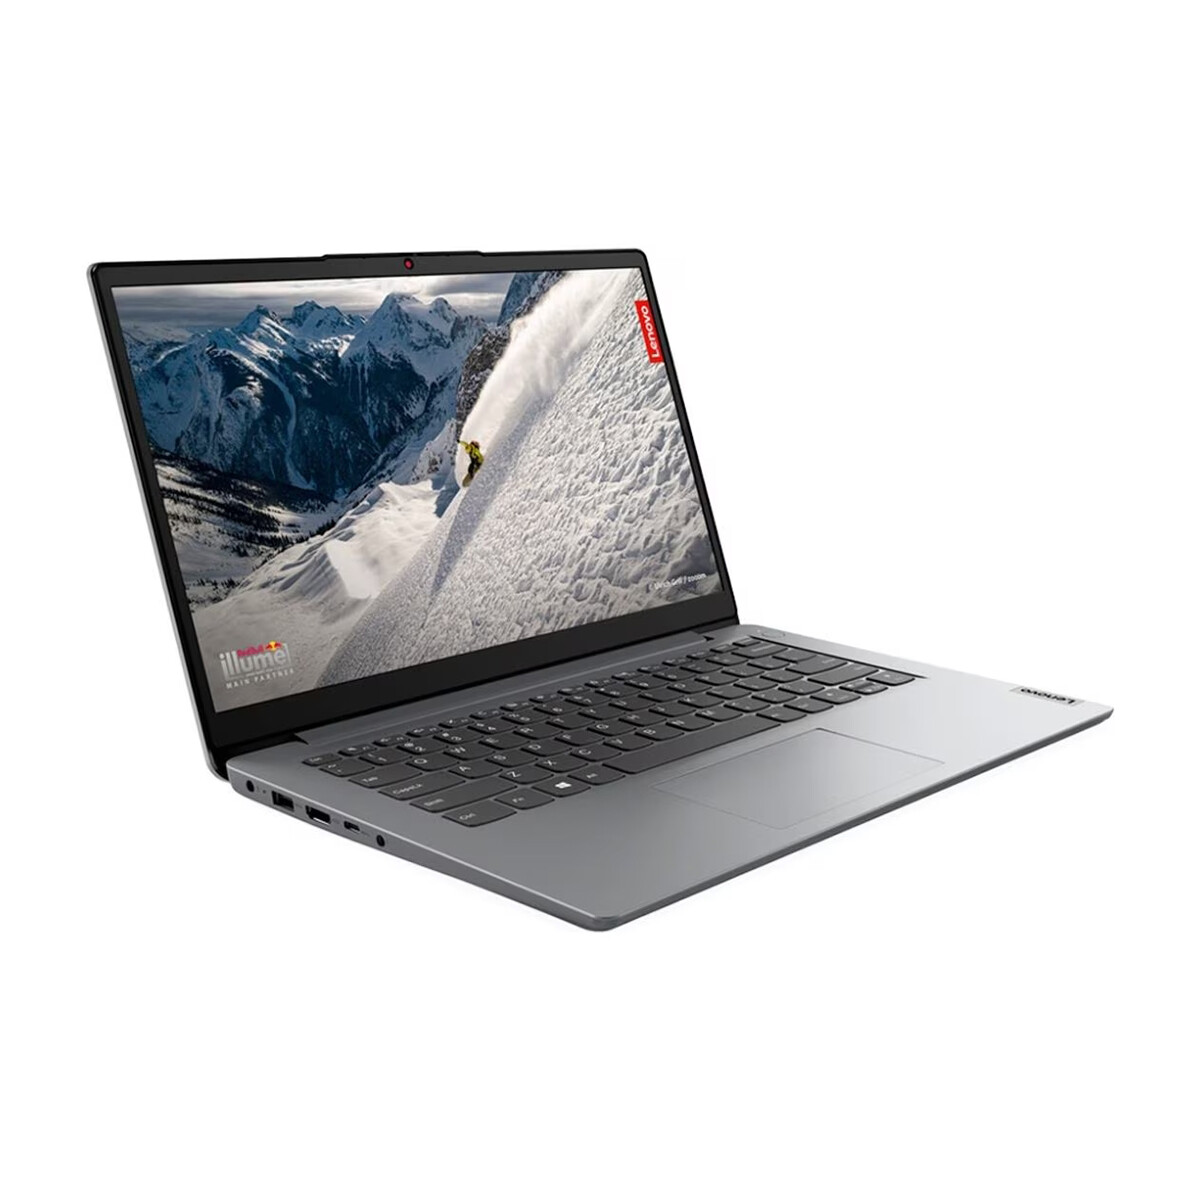 Notebook Lenovo IdeaPad 1 15.6" 256GB SSD / 8GB RAM AMD Ryzen 3 7320U Cloud grey